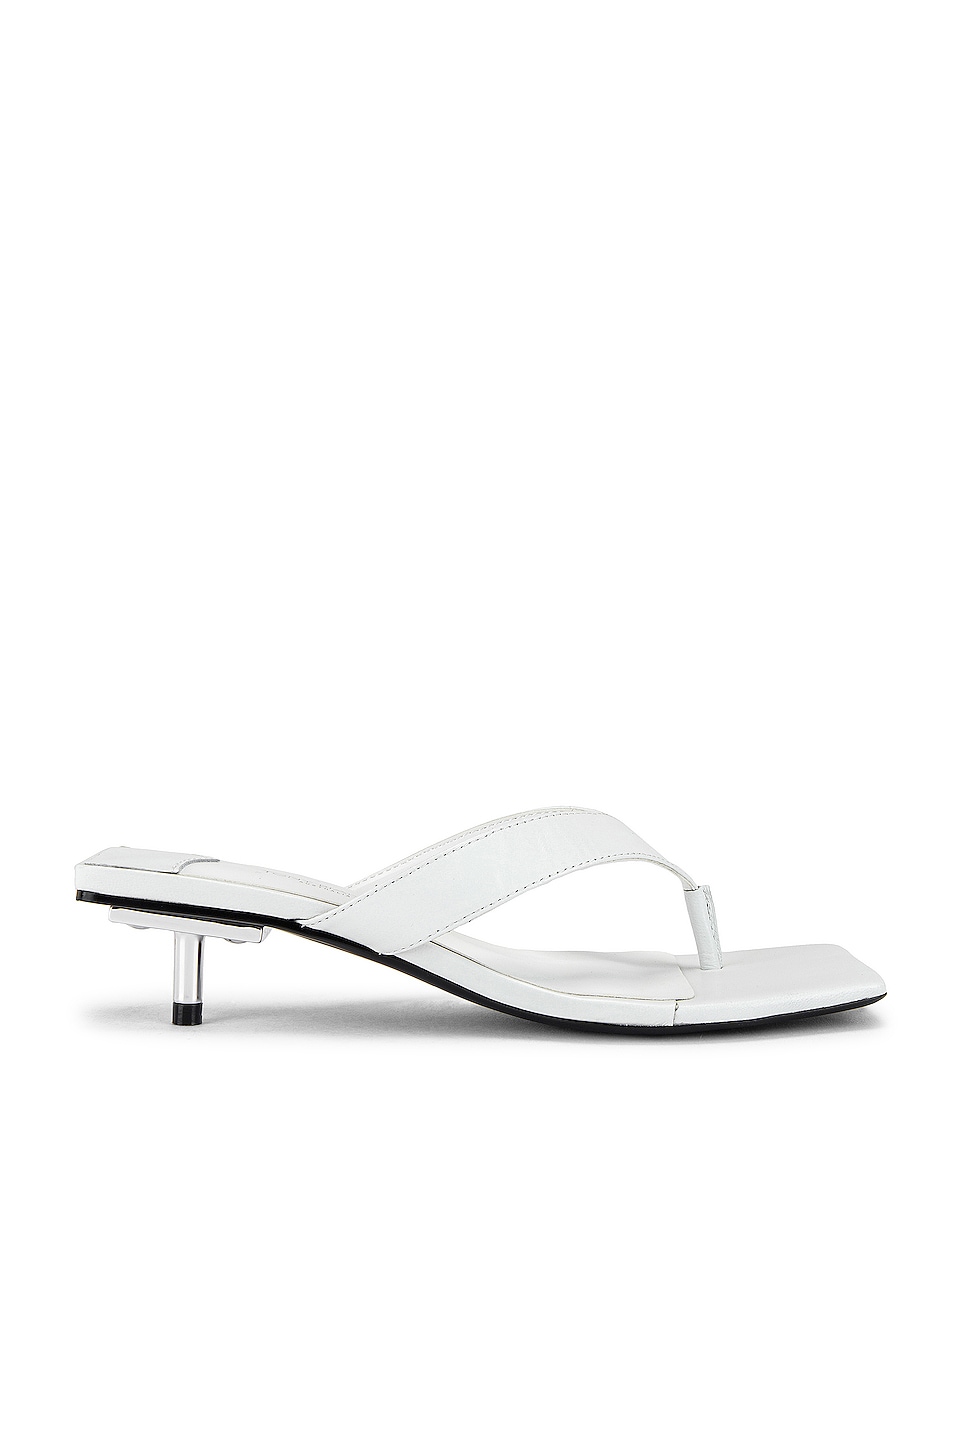 Tony Bianco Cobra Sandal in White | REVOLVE